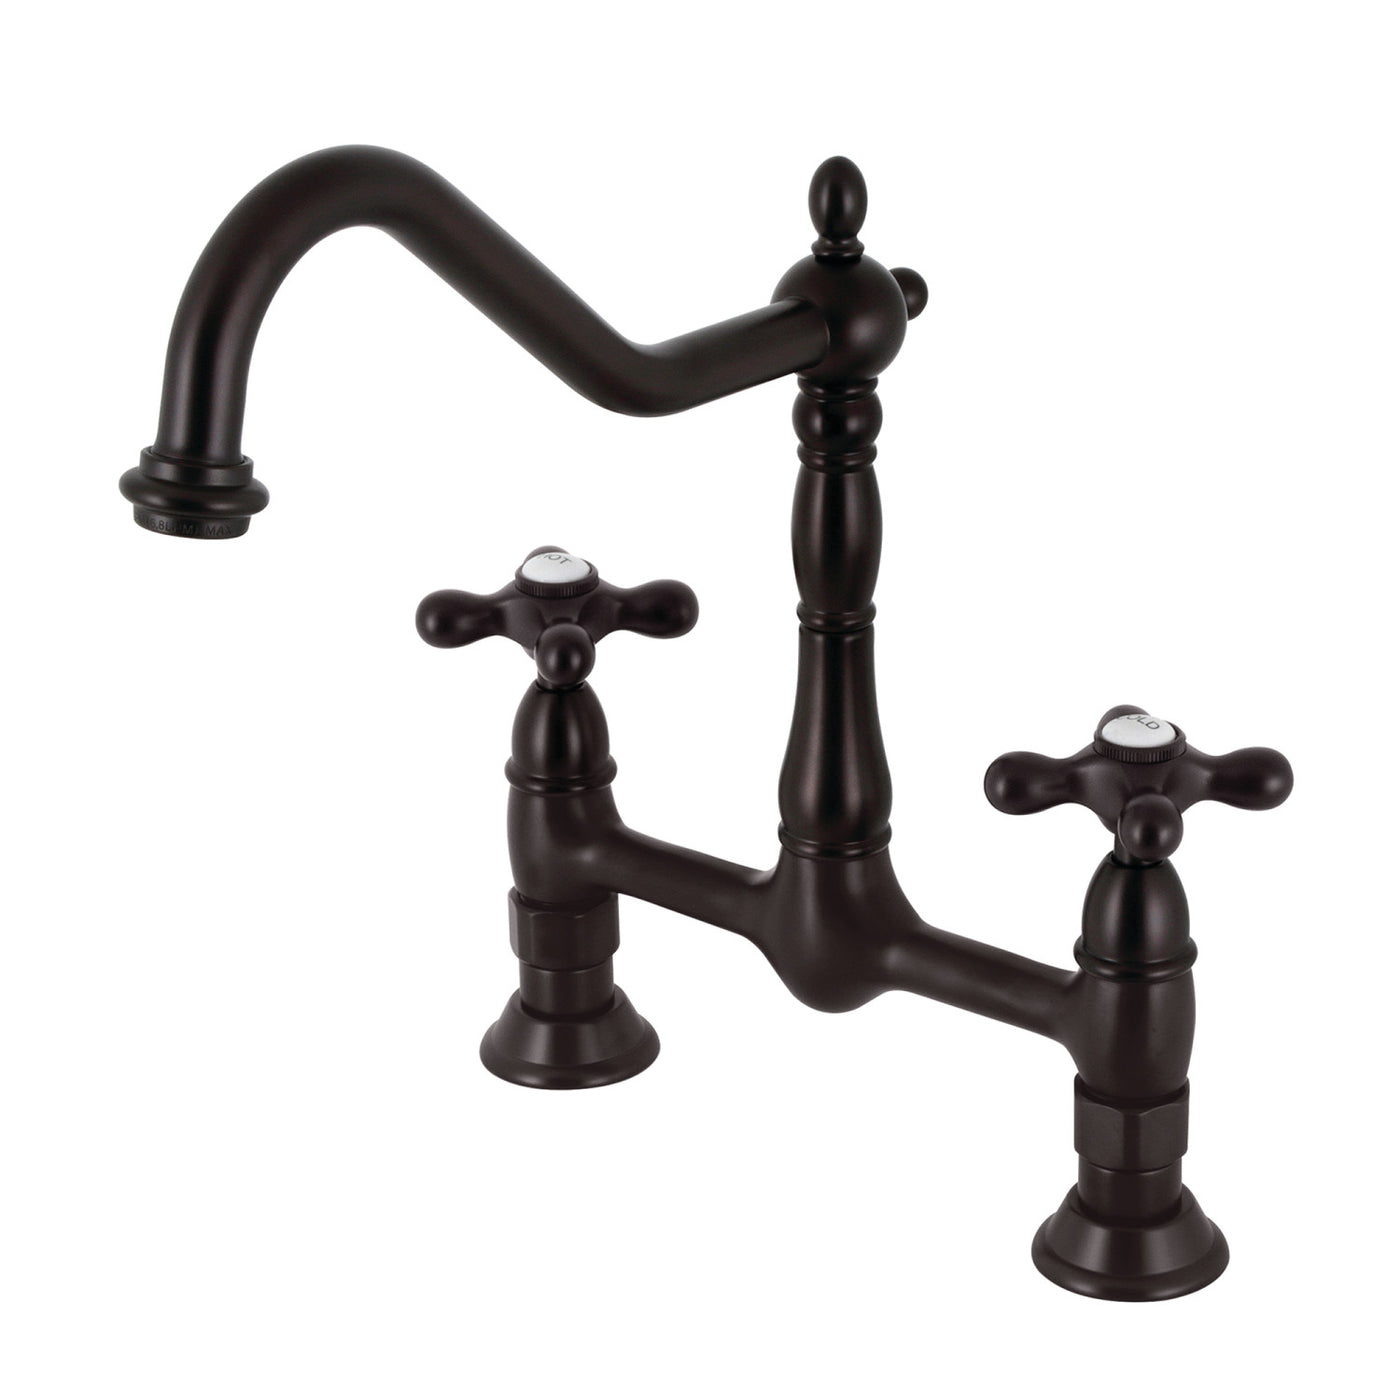 Elements of Design ES1175AX Bridge Kitchen Faucet, Oil Rubbed Bronze